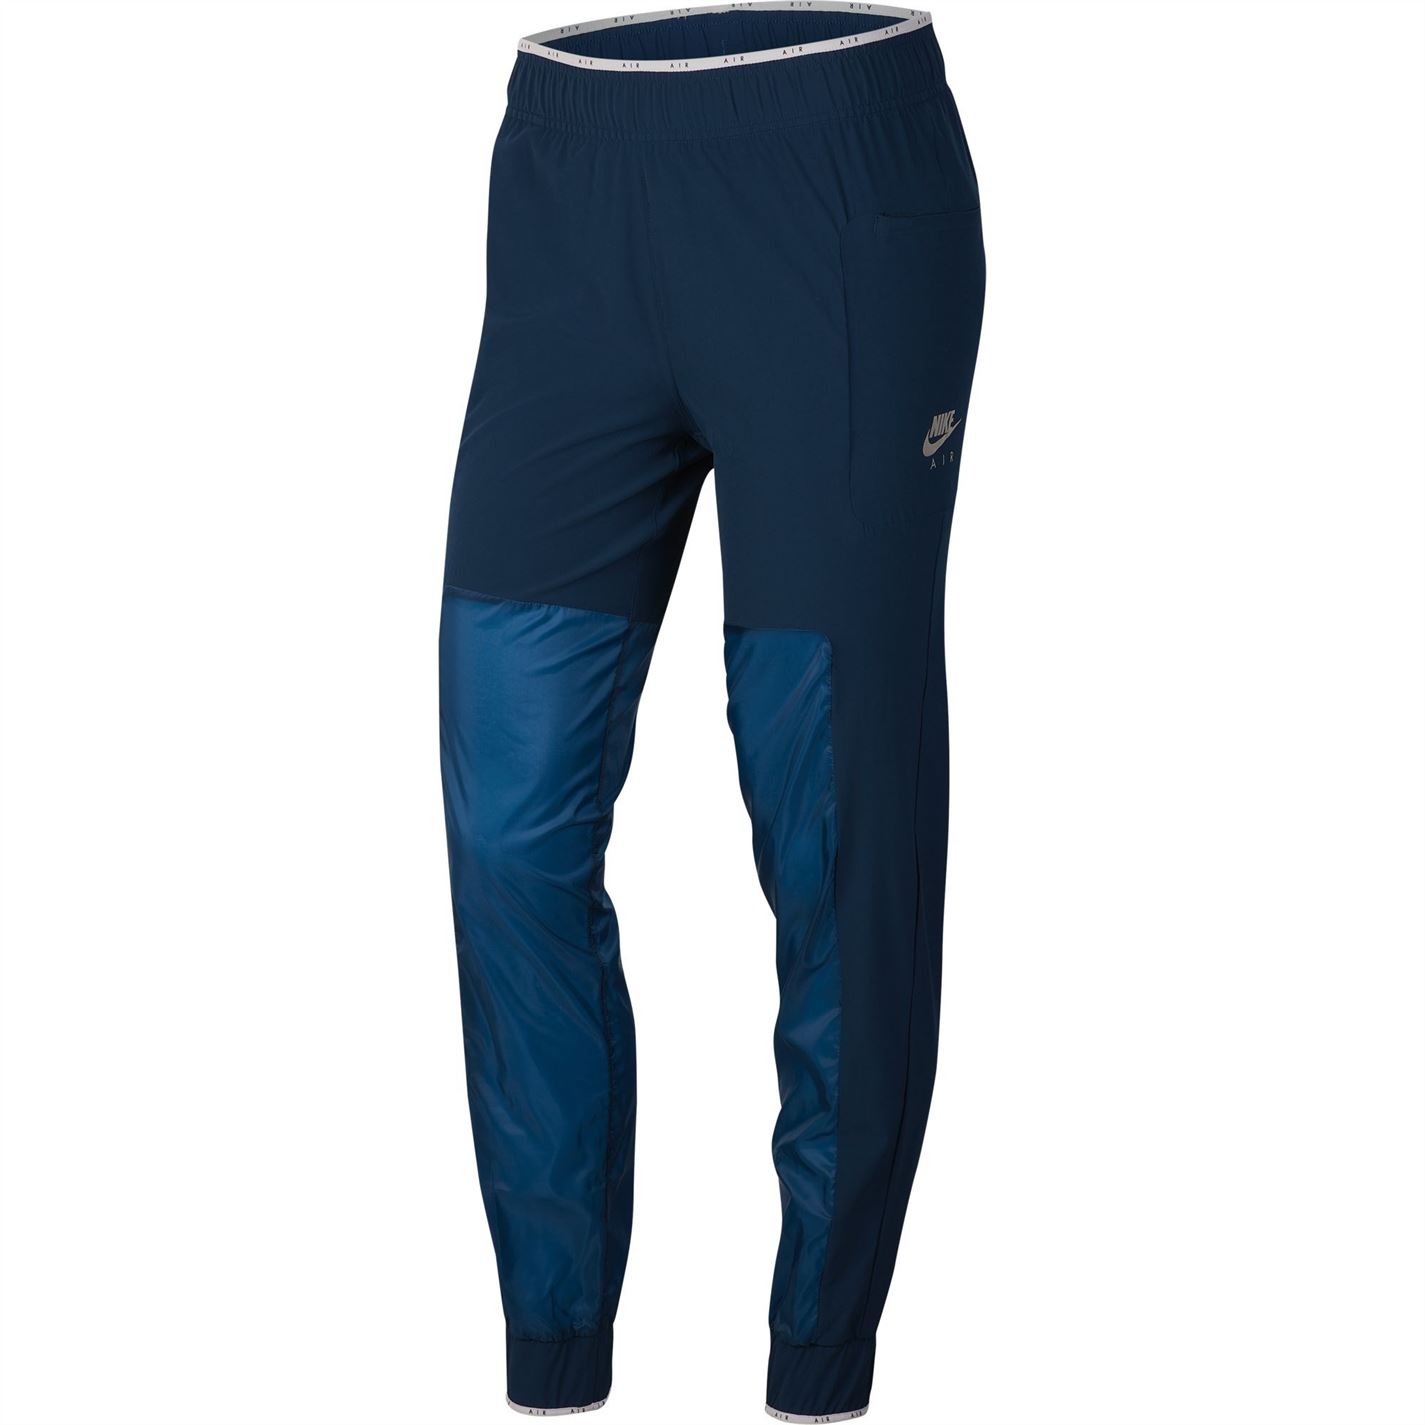 Pantaloni Nike Air pentru femei valerian albastru